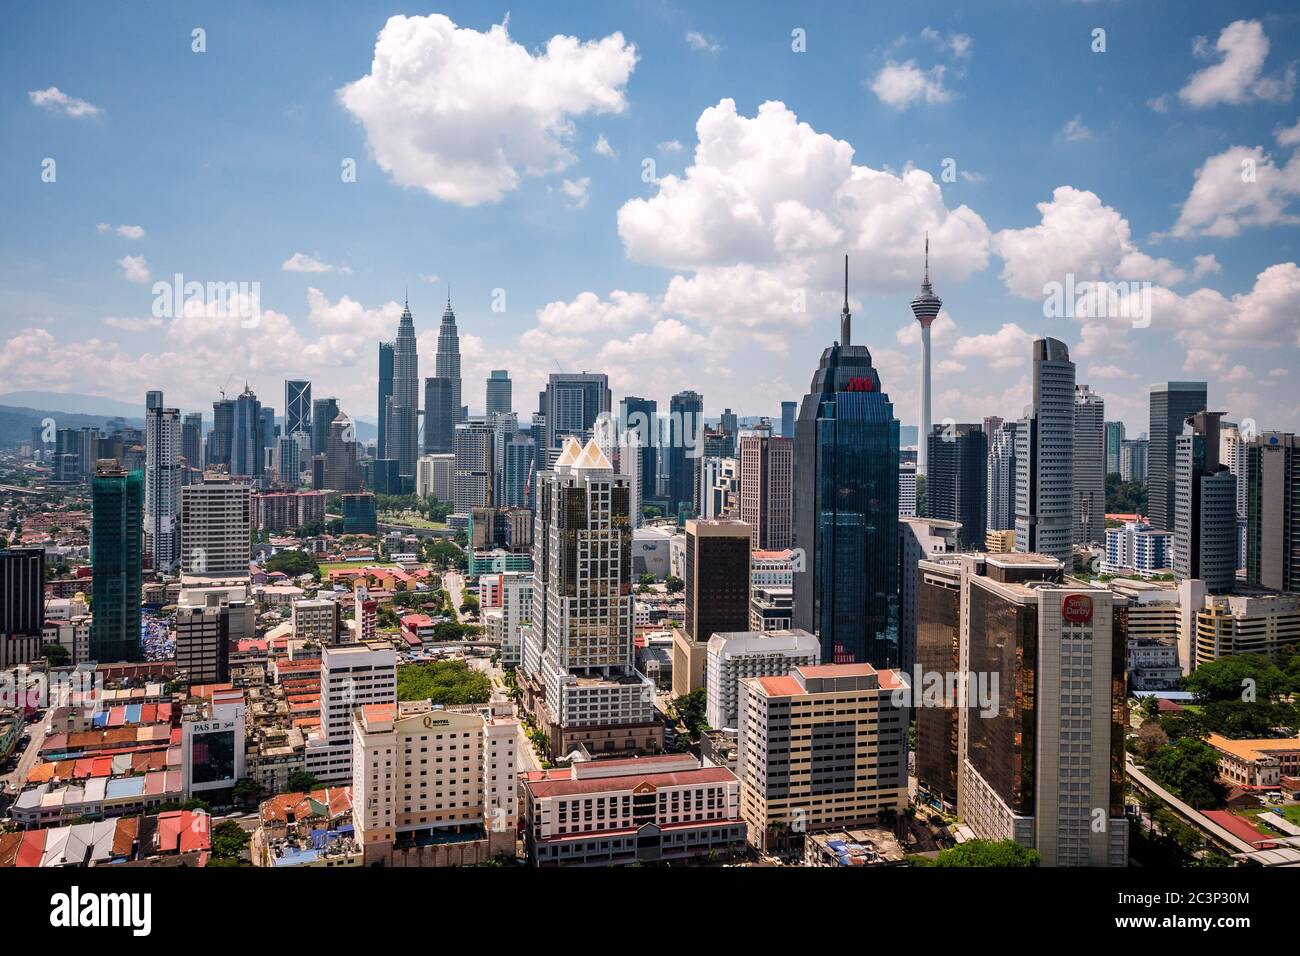 Vue aérienne du paysage urbain de Kuala Lumpur, y compris les tours jumelles Petronas, site d'intérêt national, par une journée ensoleillée à Kuala Lumpur, en Malaisie. Banque D'Images